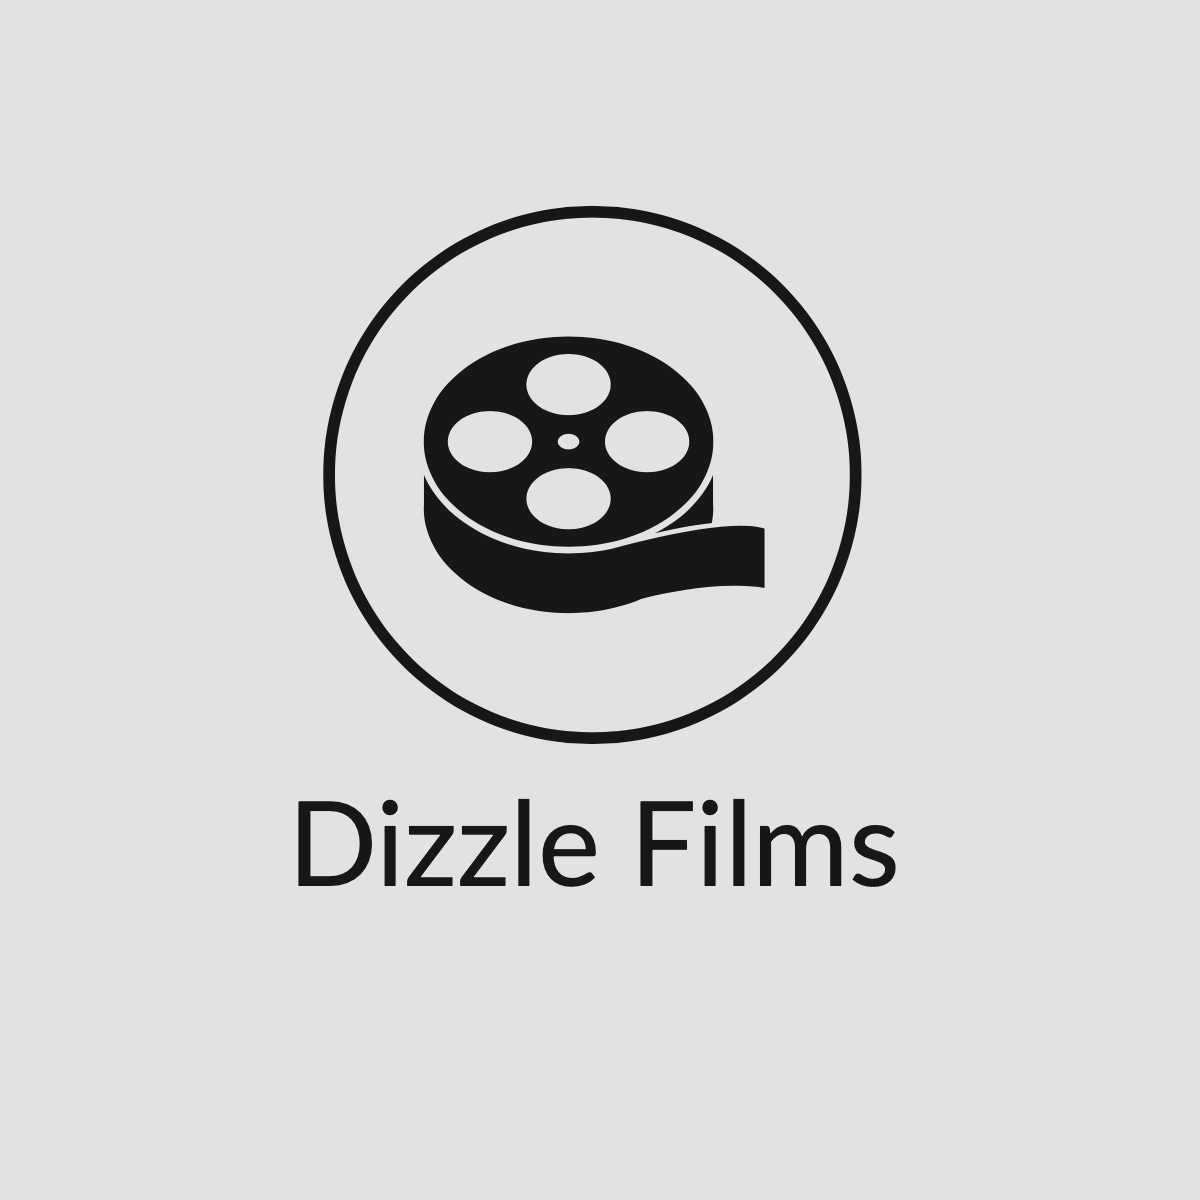 Dizzle Films